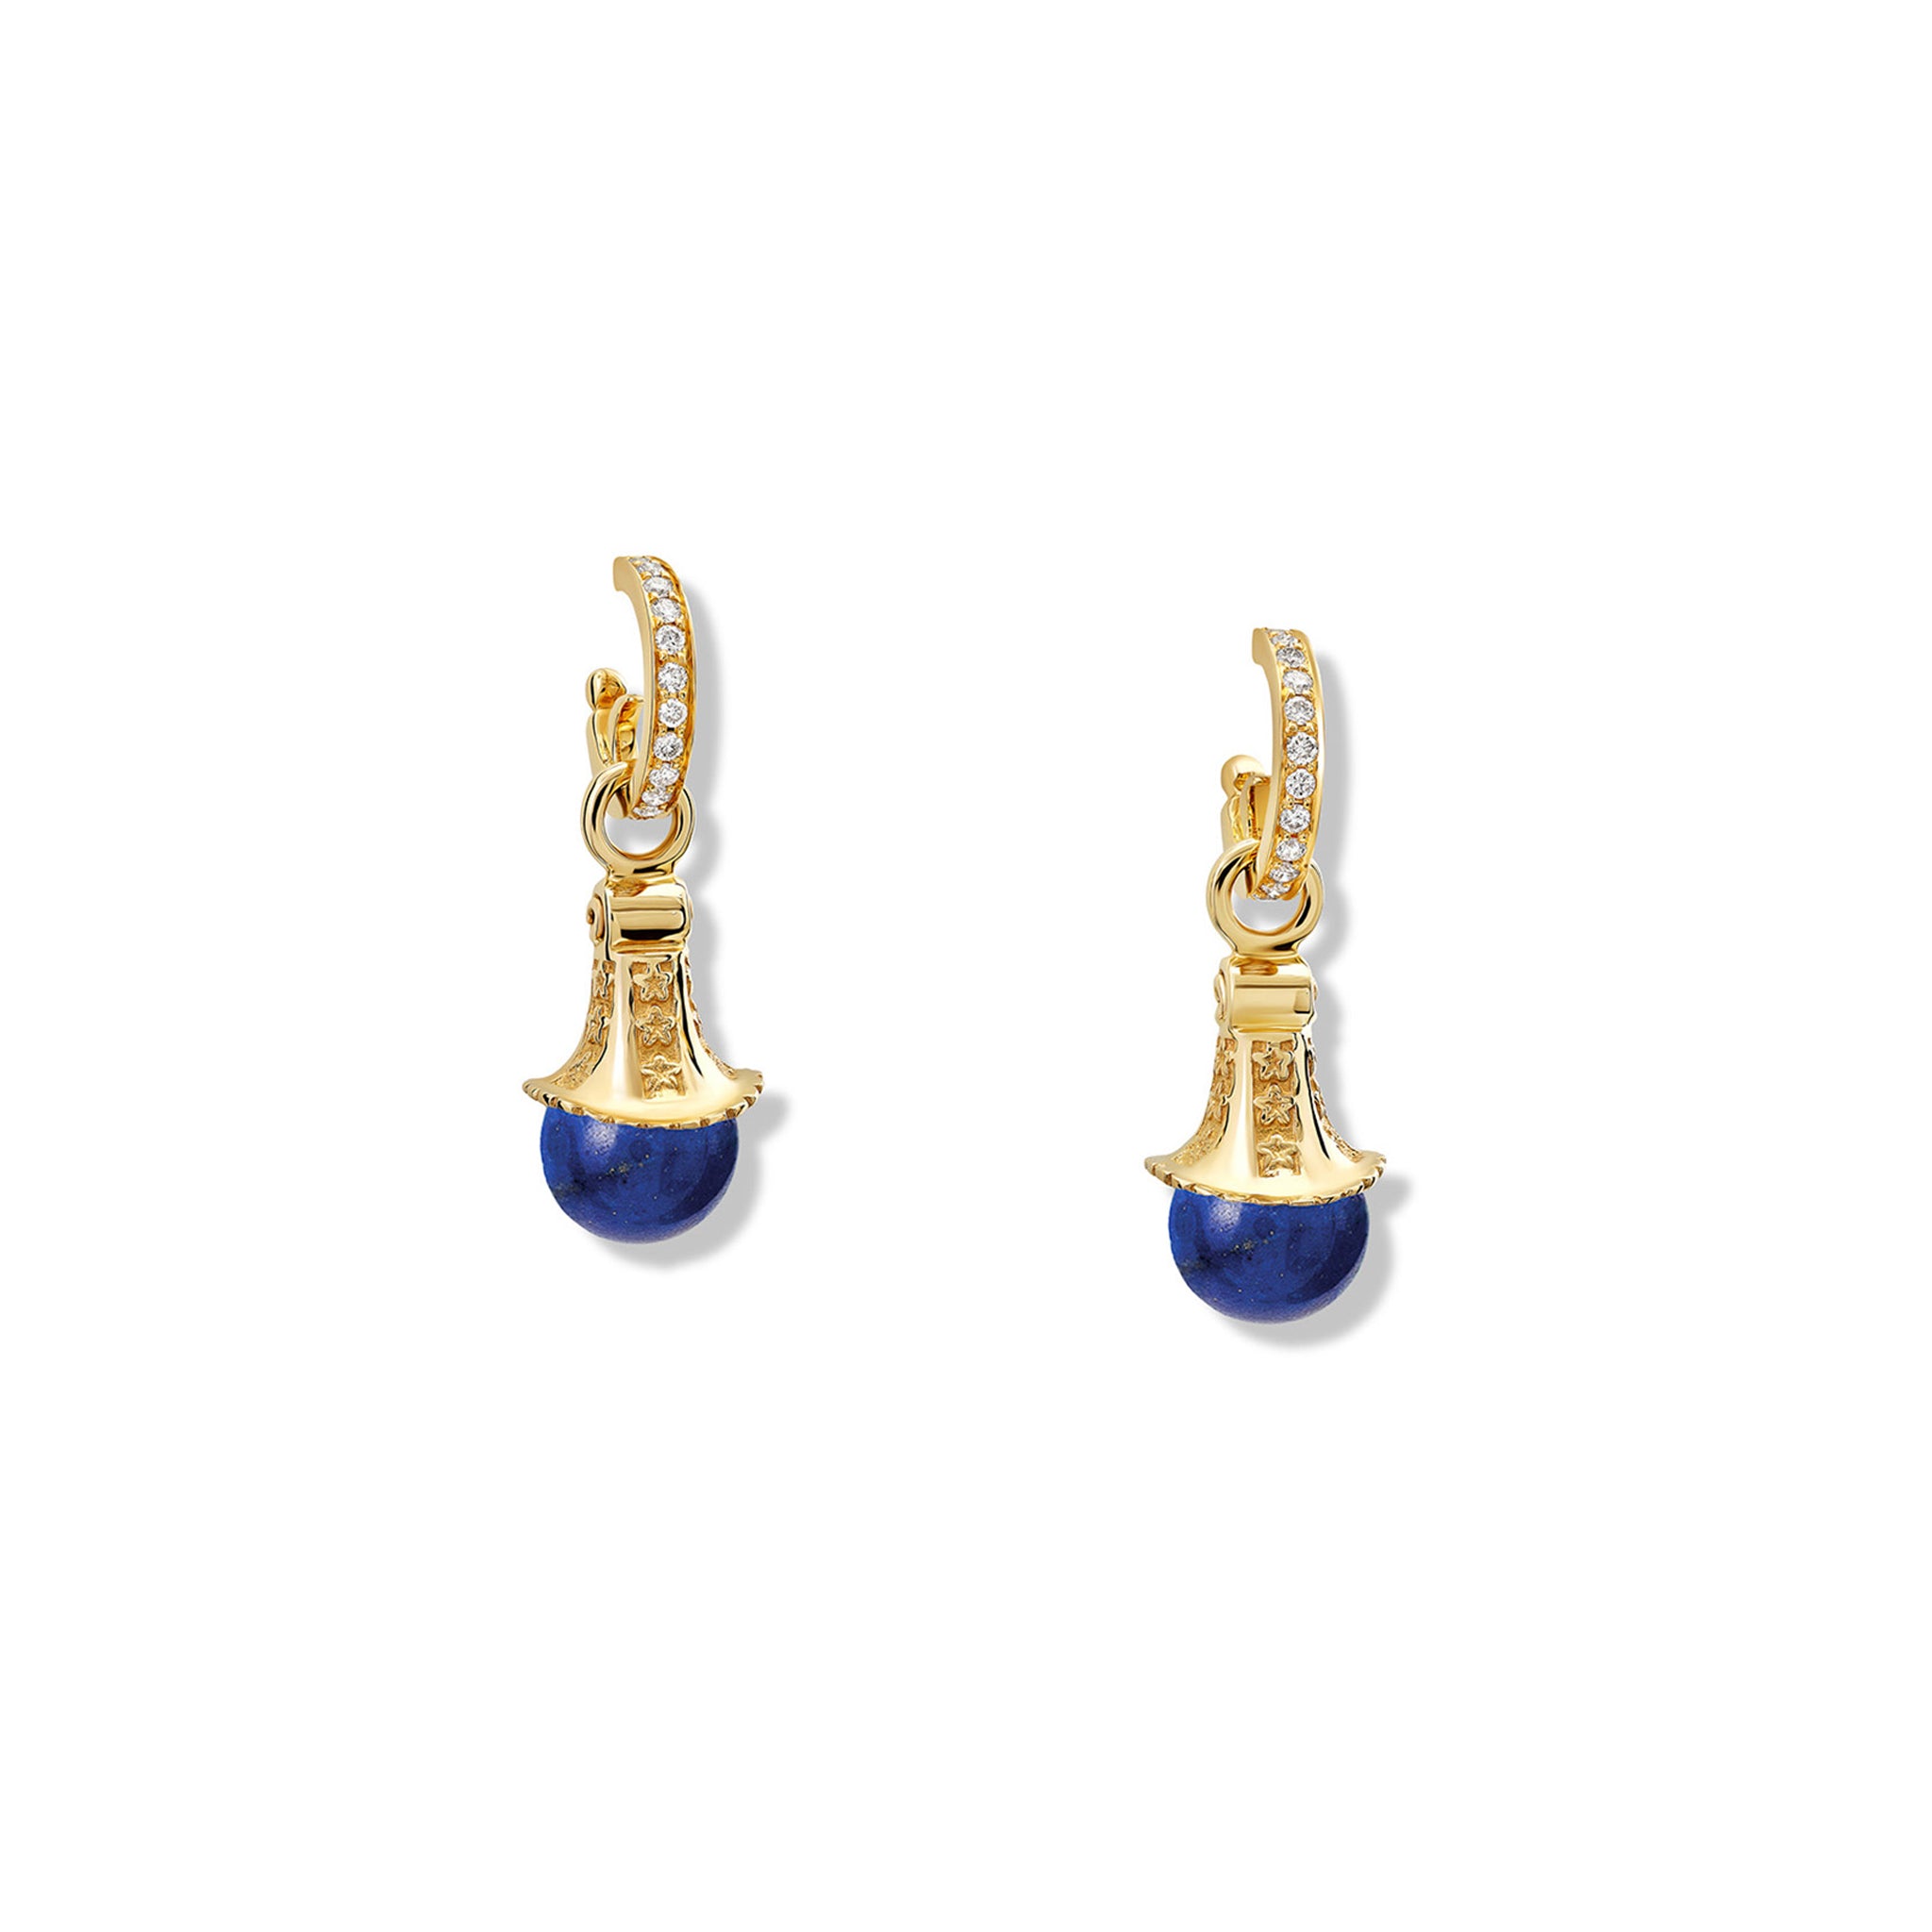 Fouquet Earring Drops Yellow Gold - Lapis Lazuli